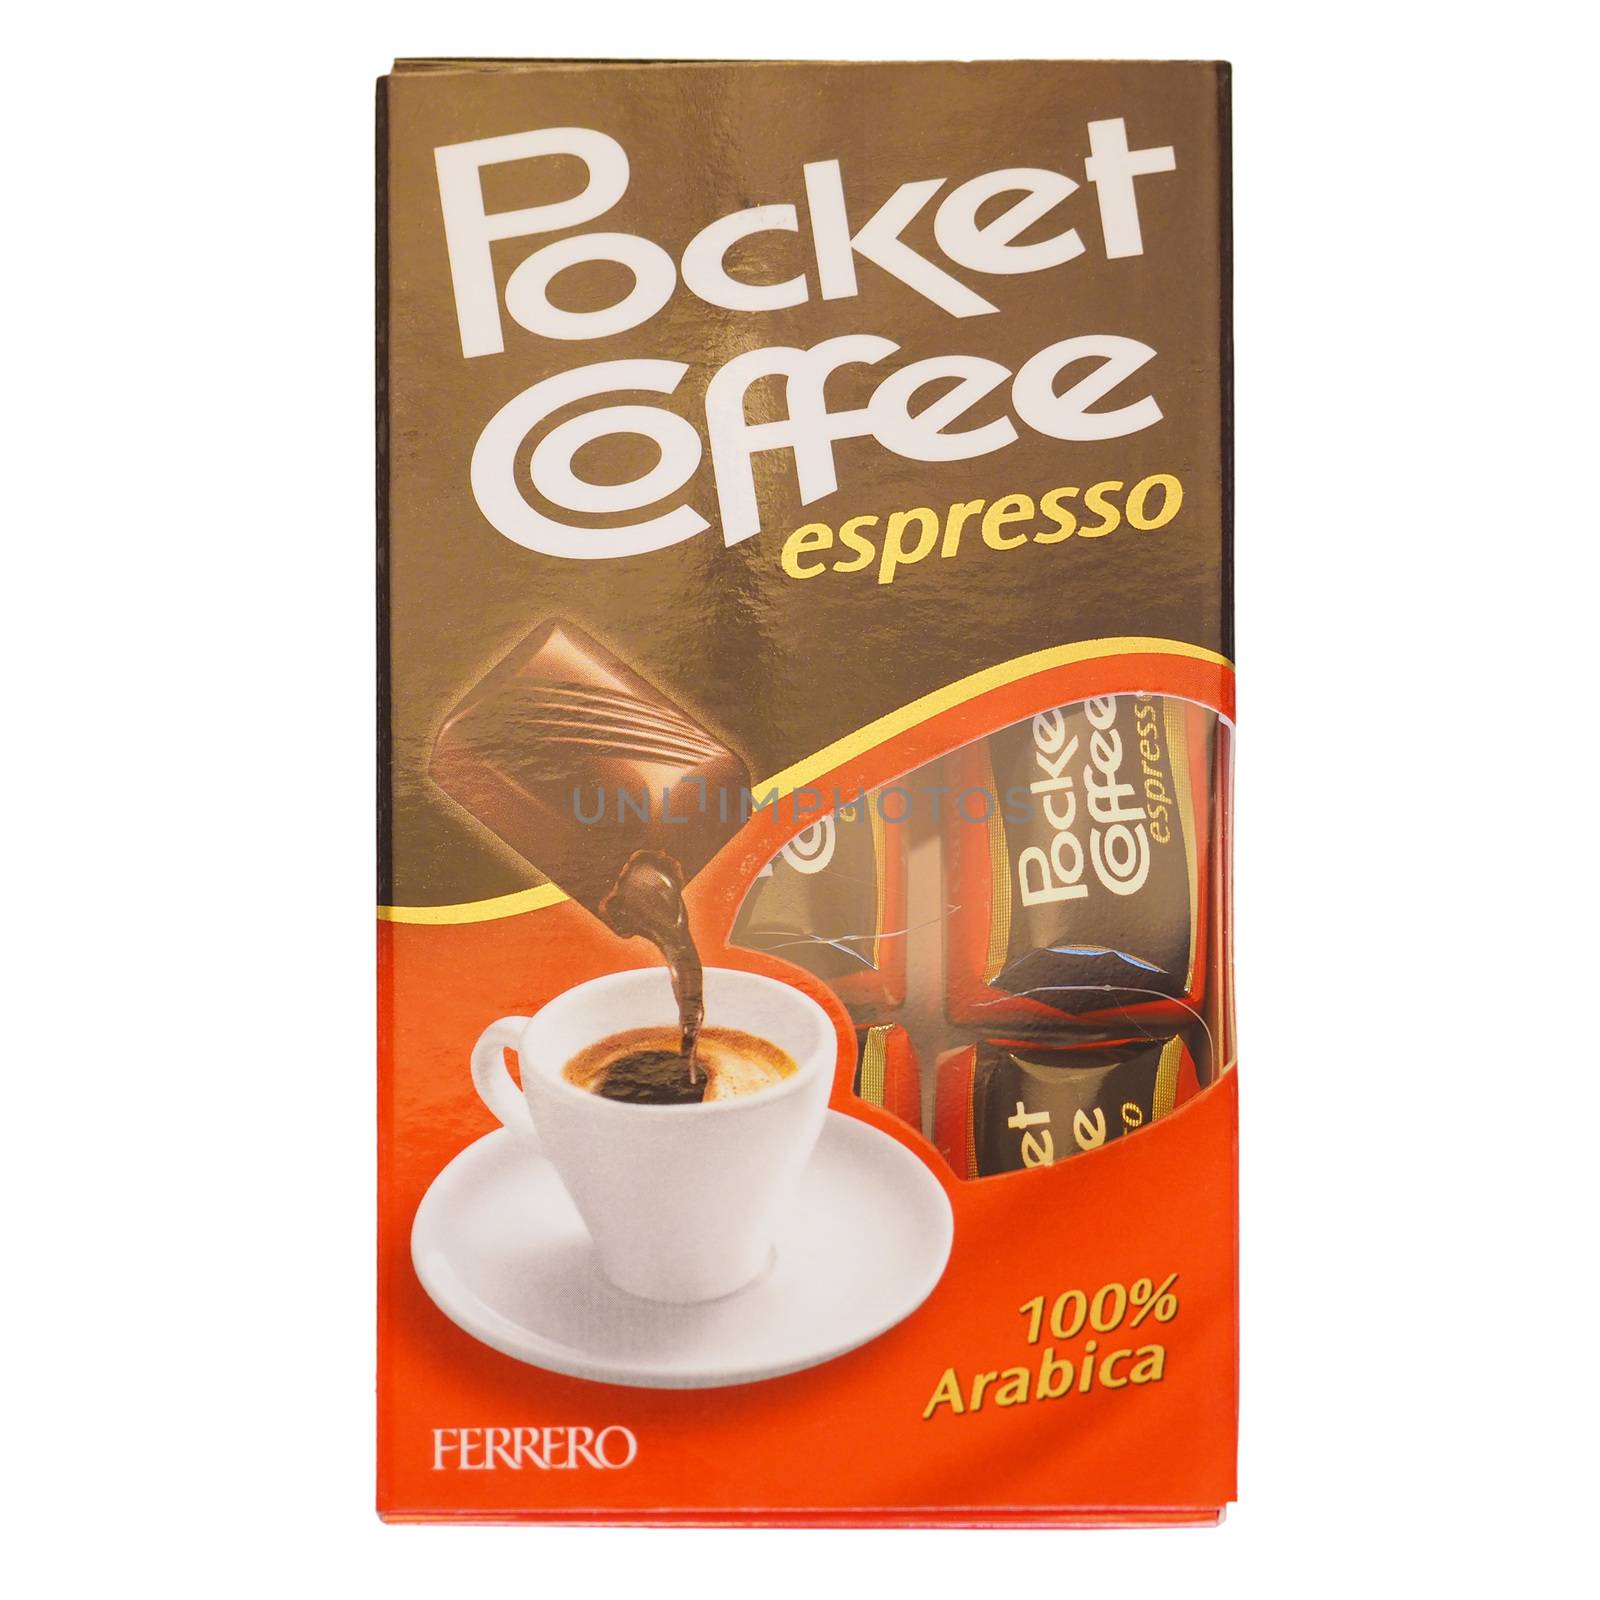 ALBA, ITALY - DECEMBER 15, 2014: Ferrero Pocket Coffee espresso